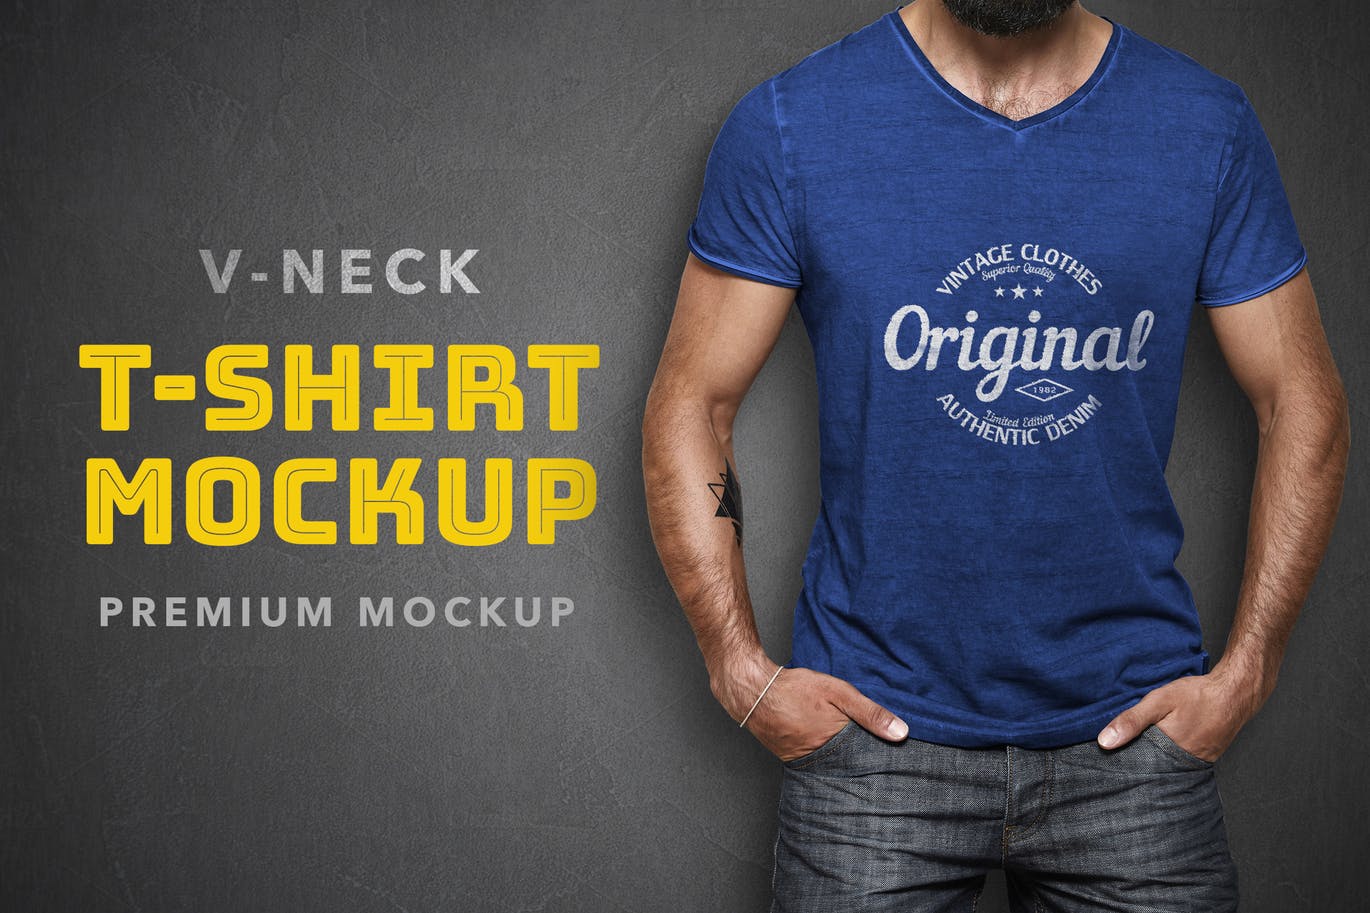 V领T恤设计模特上身效果预览样机模板 V-Neck T-Shirt Mockup插图